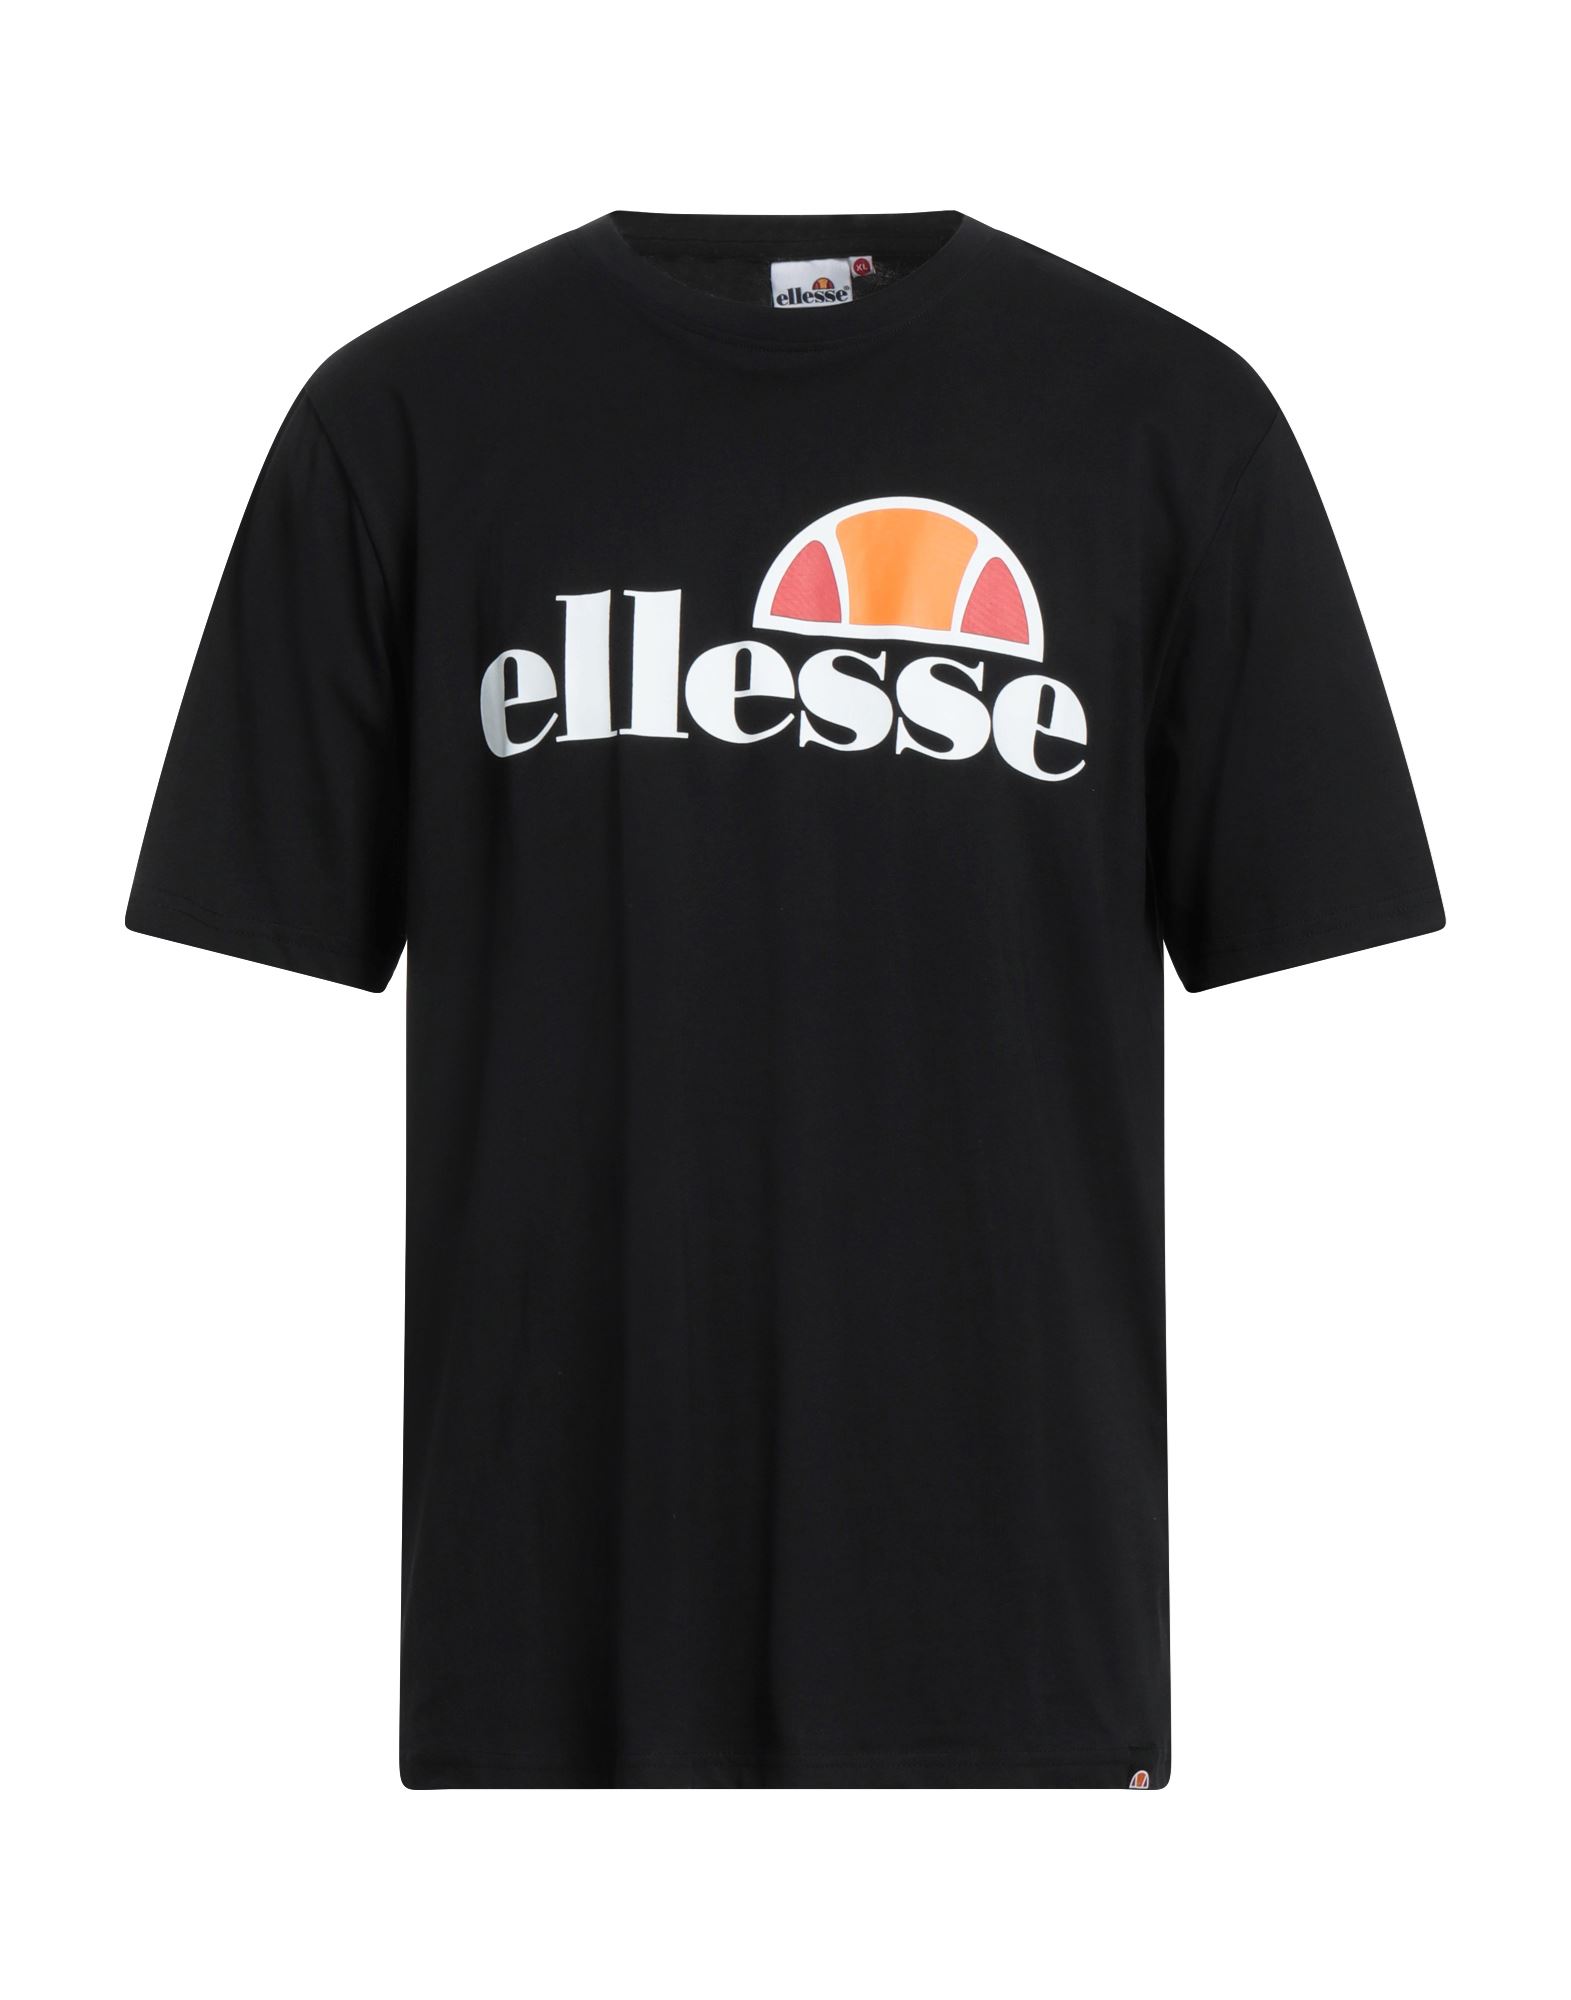 ELLESSE ELLESSE MAN T-SHIRT BLACK SIZE XL COTTON